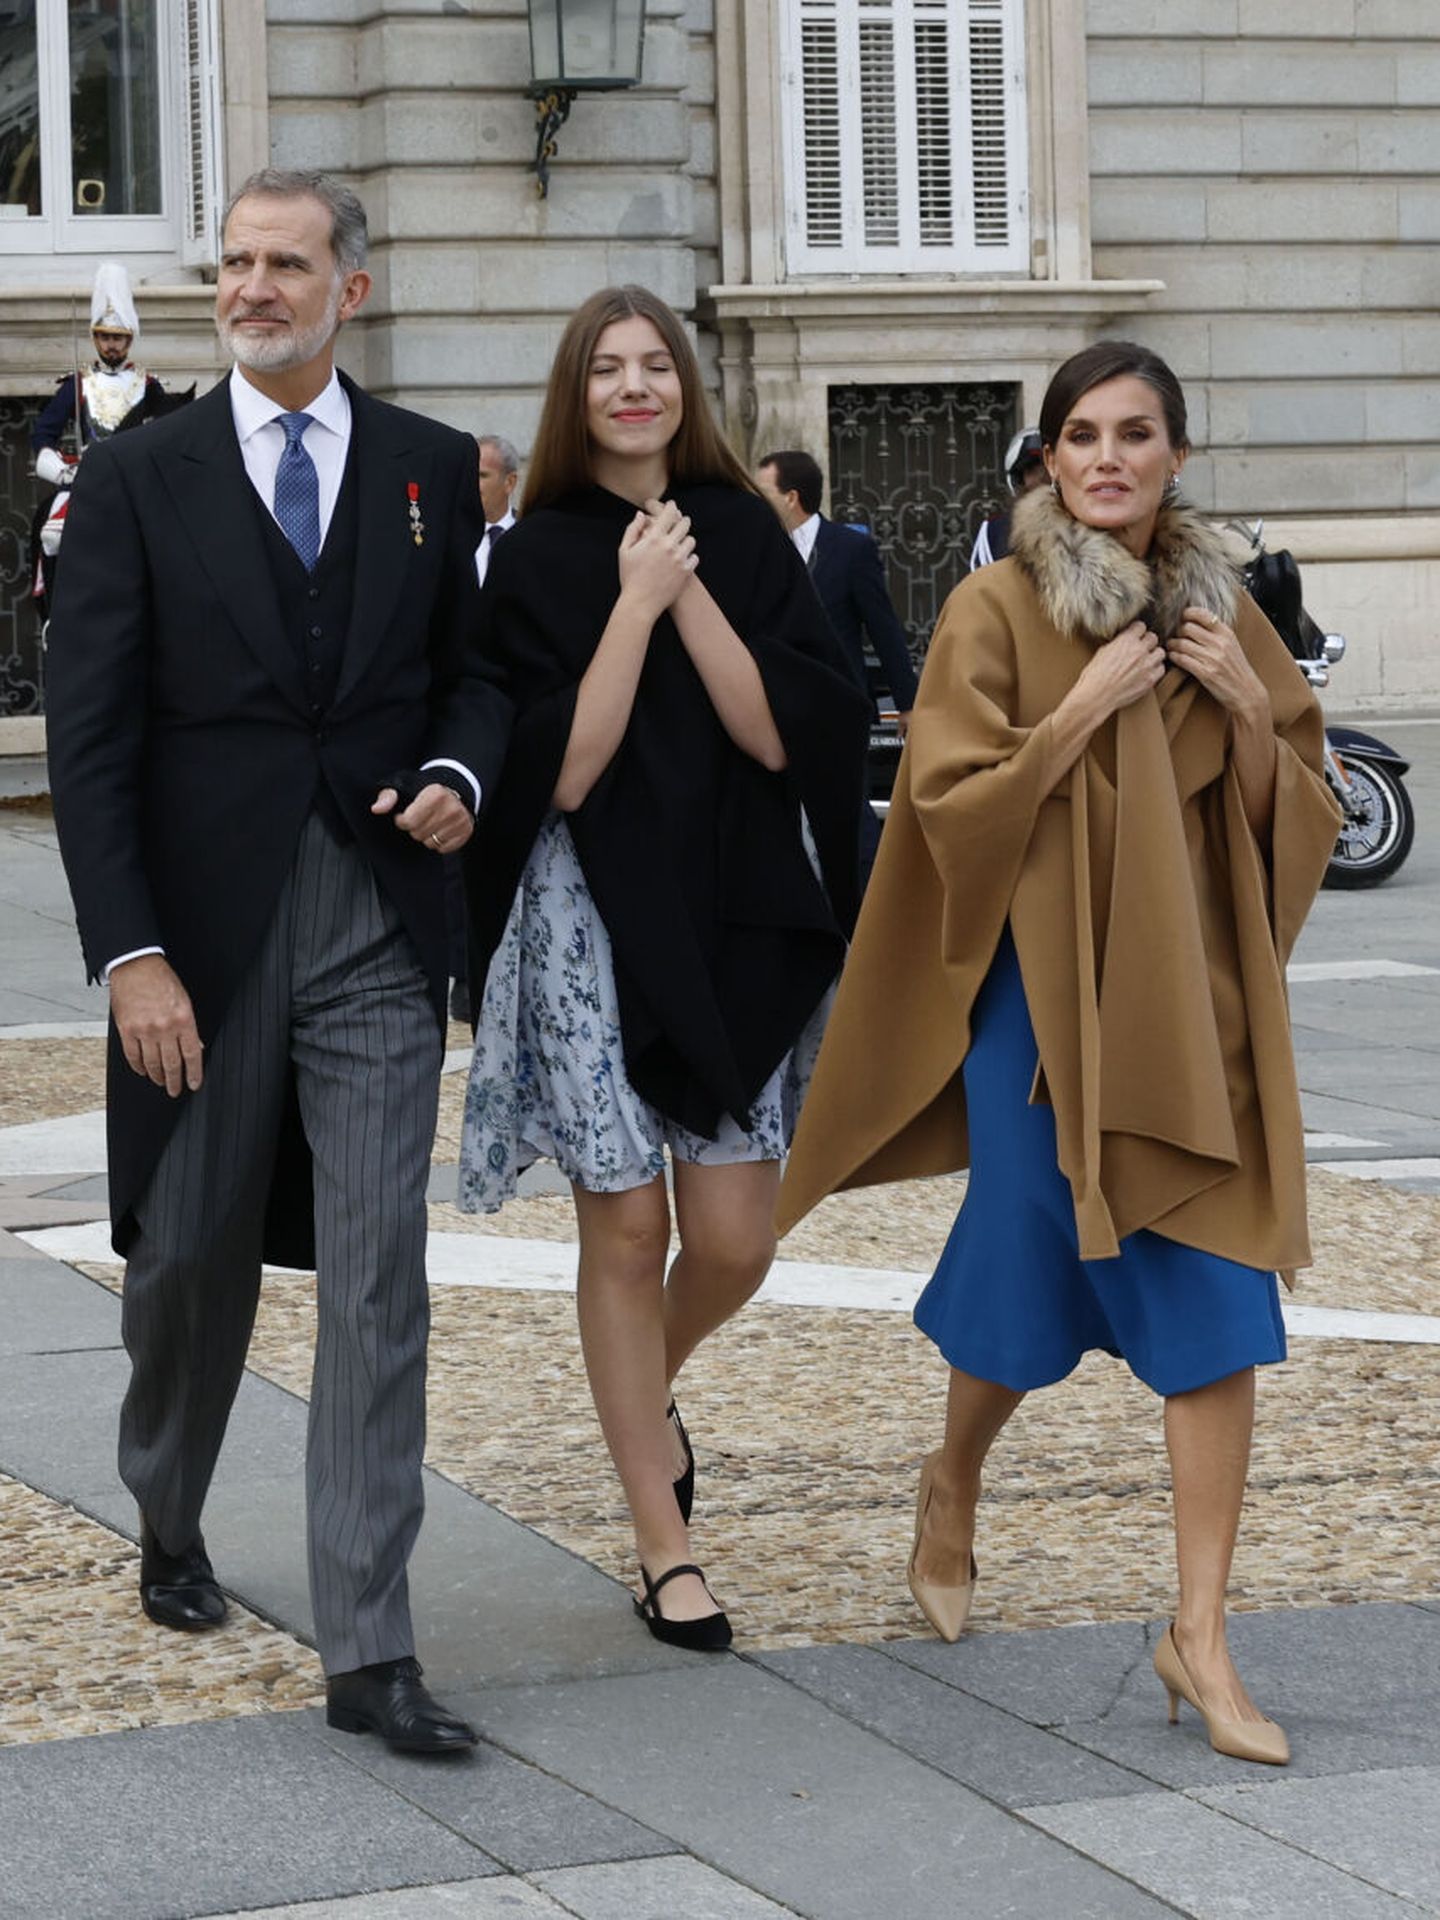 Los reyes Felipe VI y Letizia y la infanta Sofía salen a la Plaza de Oriente tras el almuerzo en el Palacio Real a saludar y a dejarse fotografiar por la gente que estaba allí congregada. (EFE/CASA S.M. EL REY)